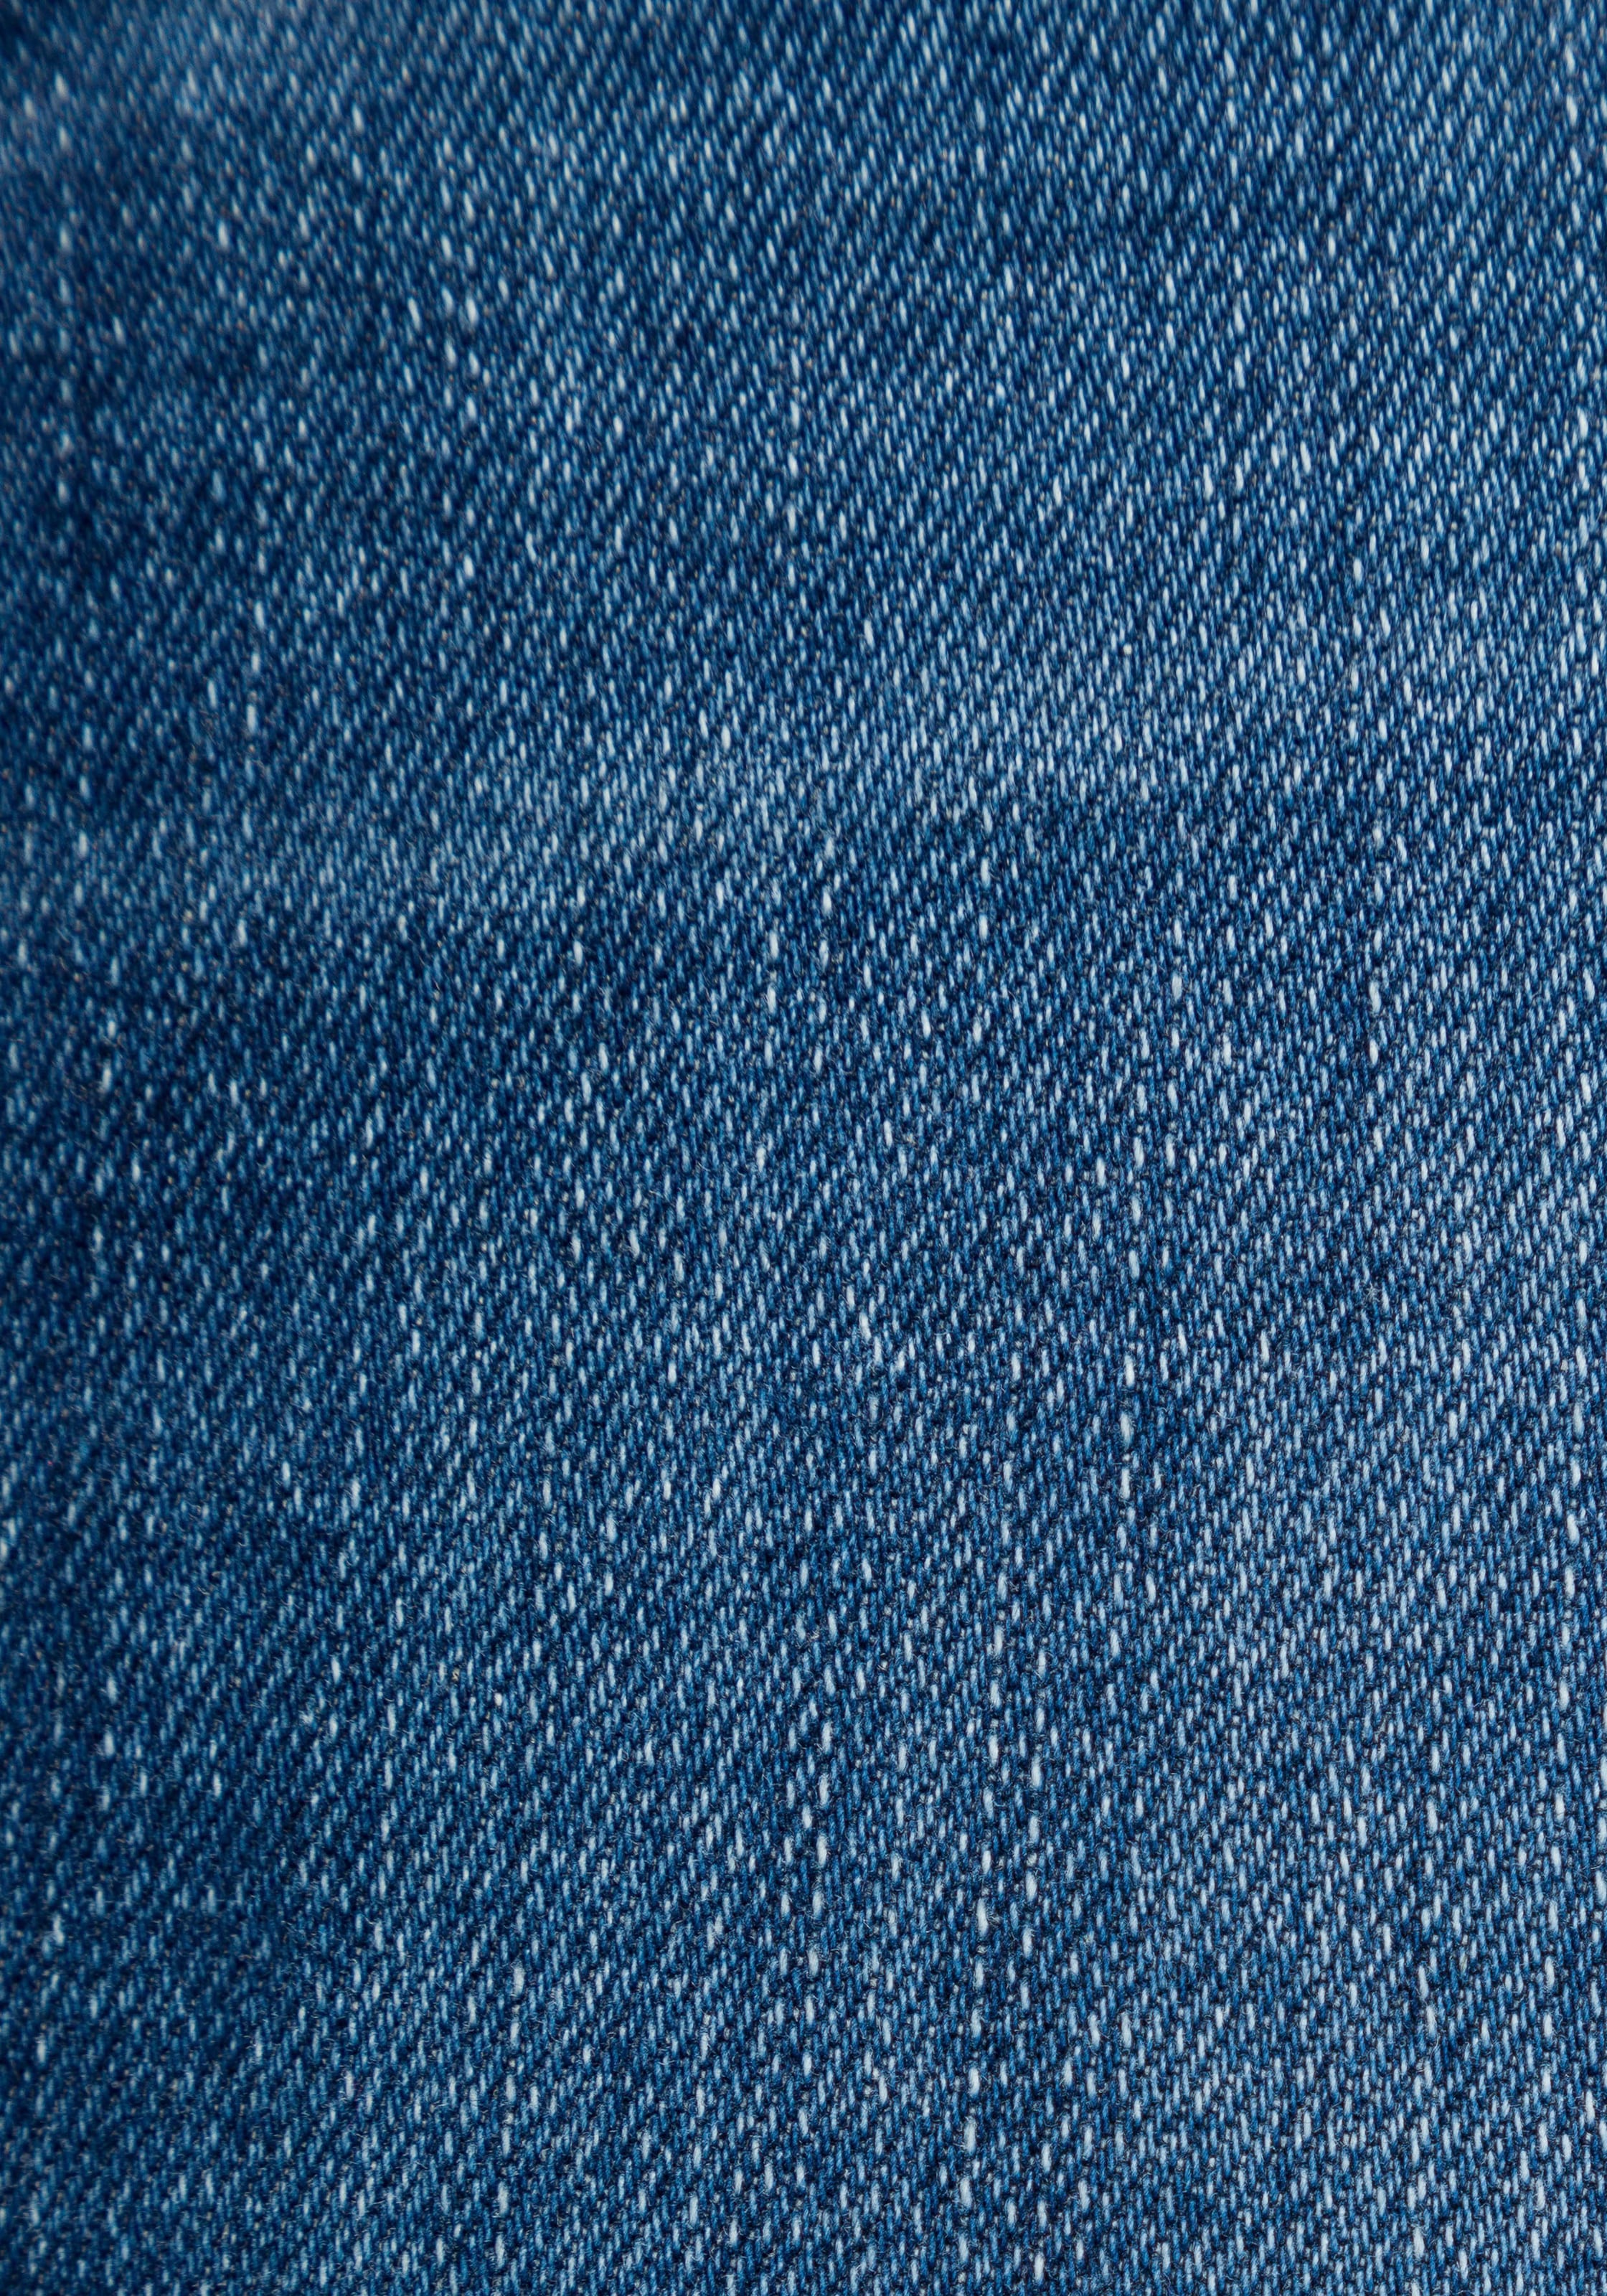 Tommy Hilfiger Skinny-fit-Jeans »COMO SKINNY RW DOREEN«, (TH FLEX COMO SKINNY RW), mit Fade-Effekten & Tommy Hilfiger Logo-Flag